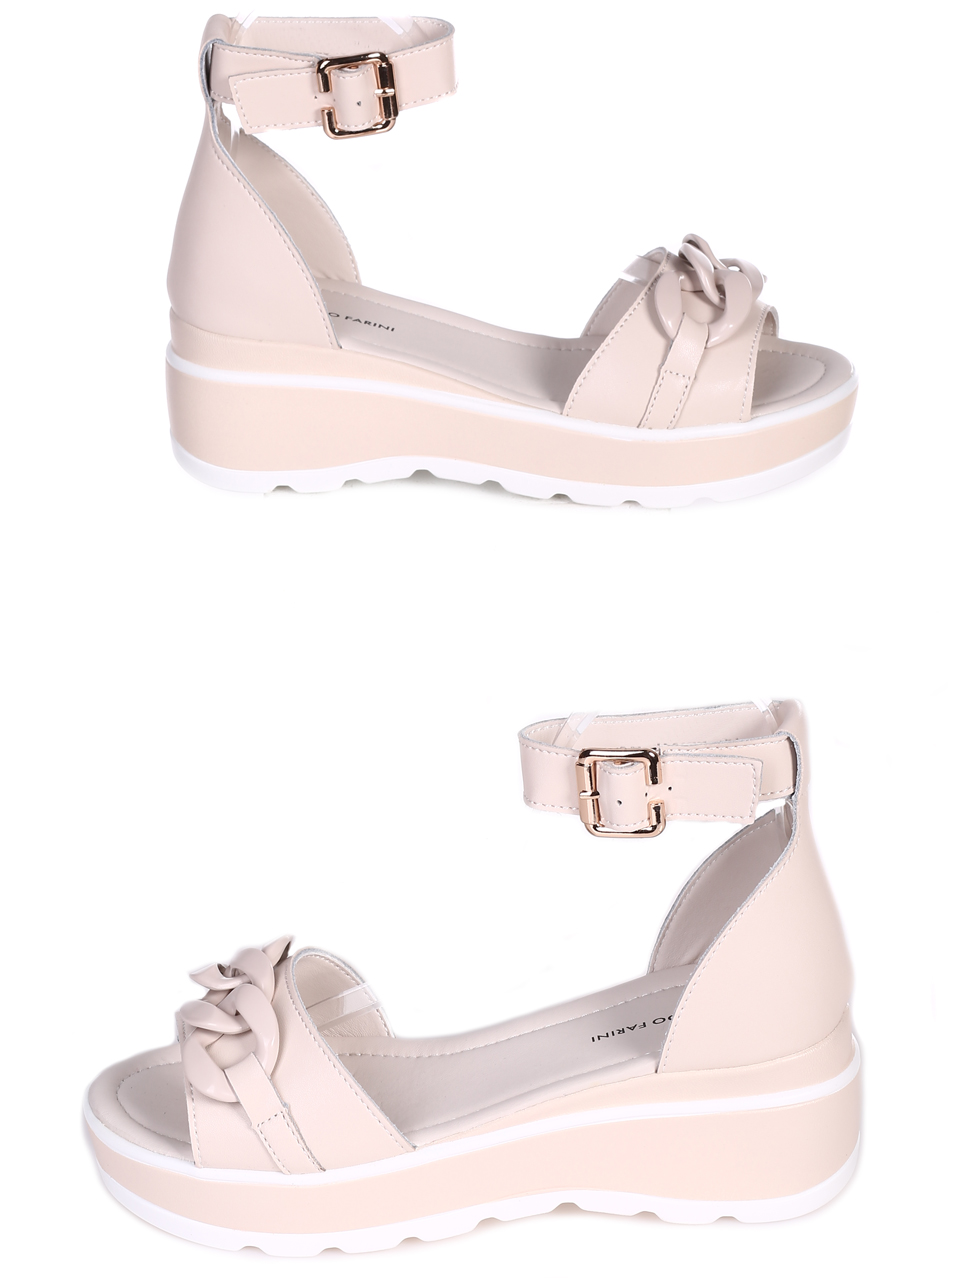 Ежедневни дамски сандали на платформа от естествен кожа 4AF-23159 white/beige